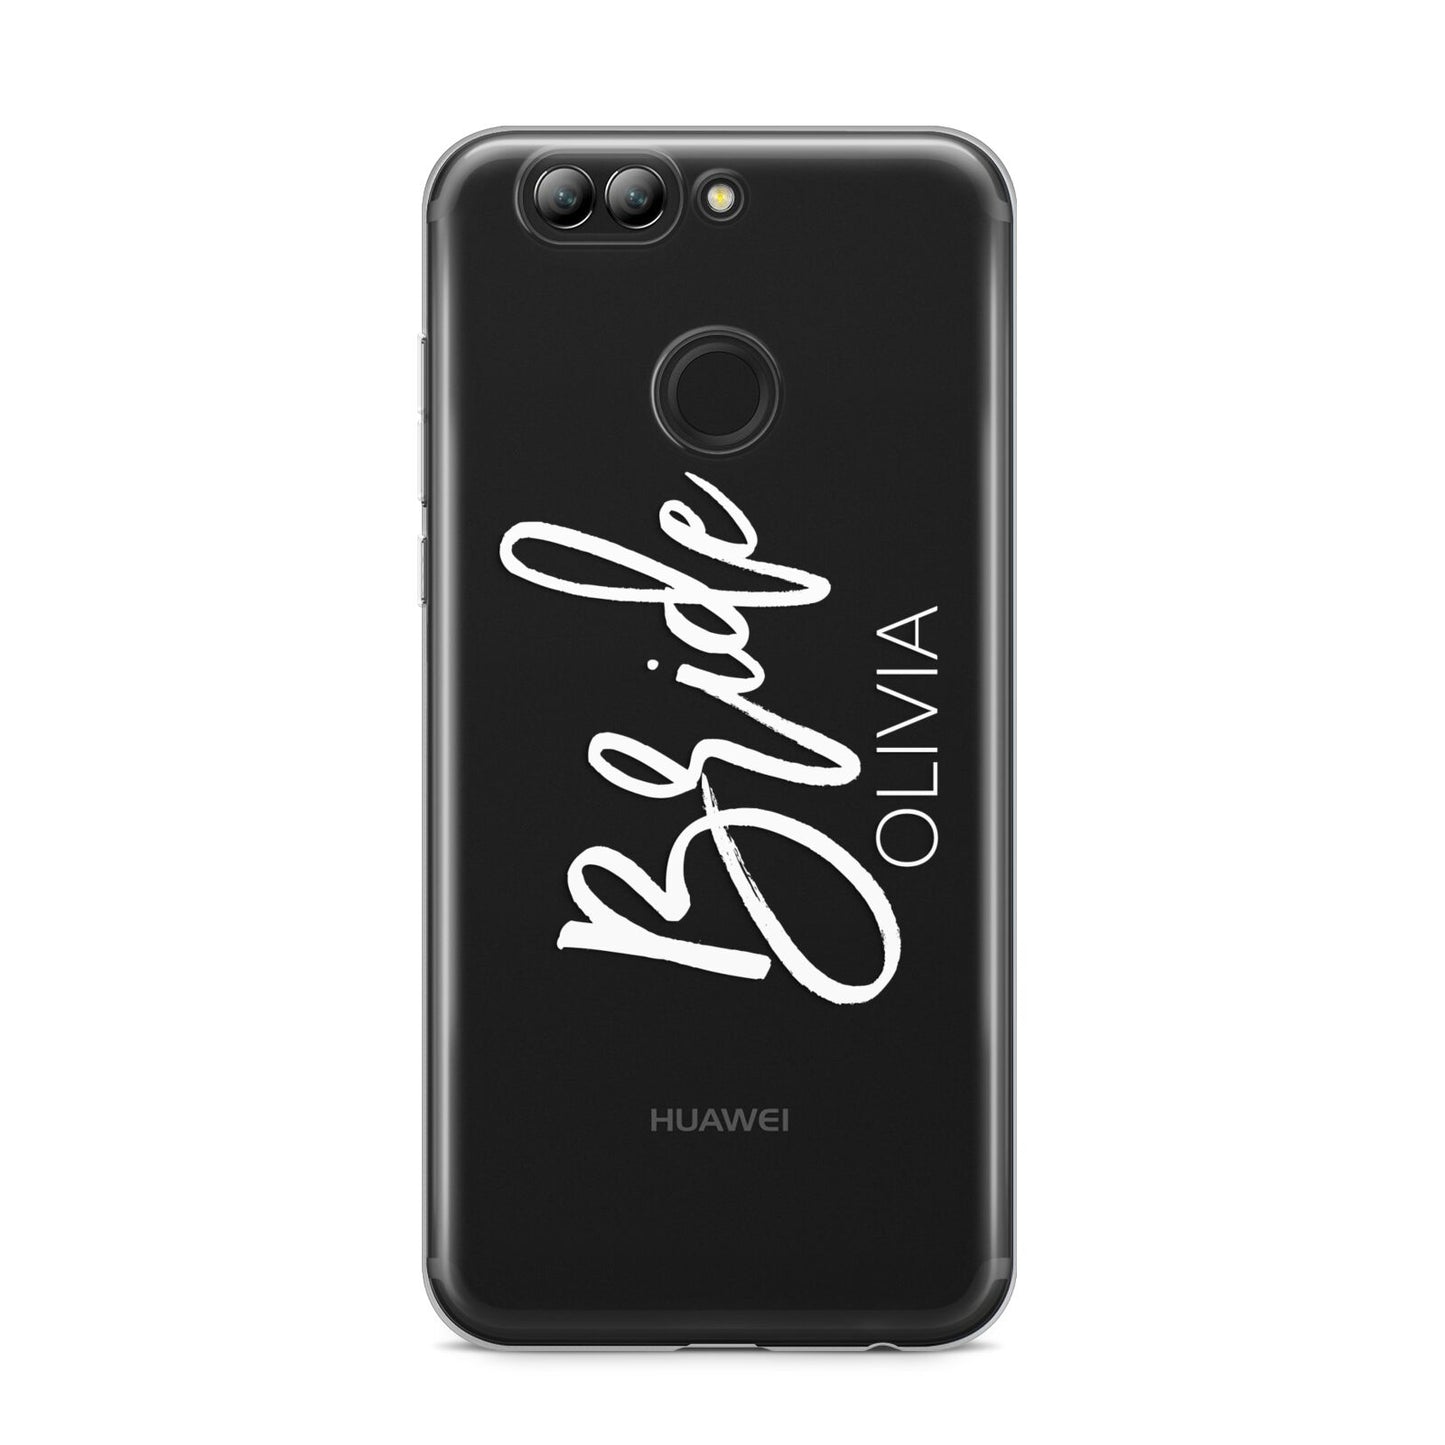 Personalised Bride Huawei Nova 2s Phone Case